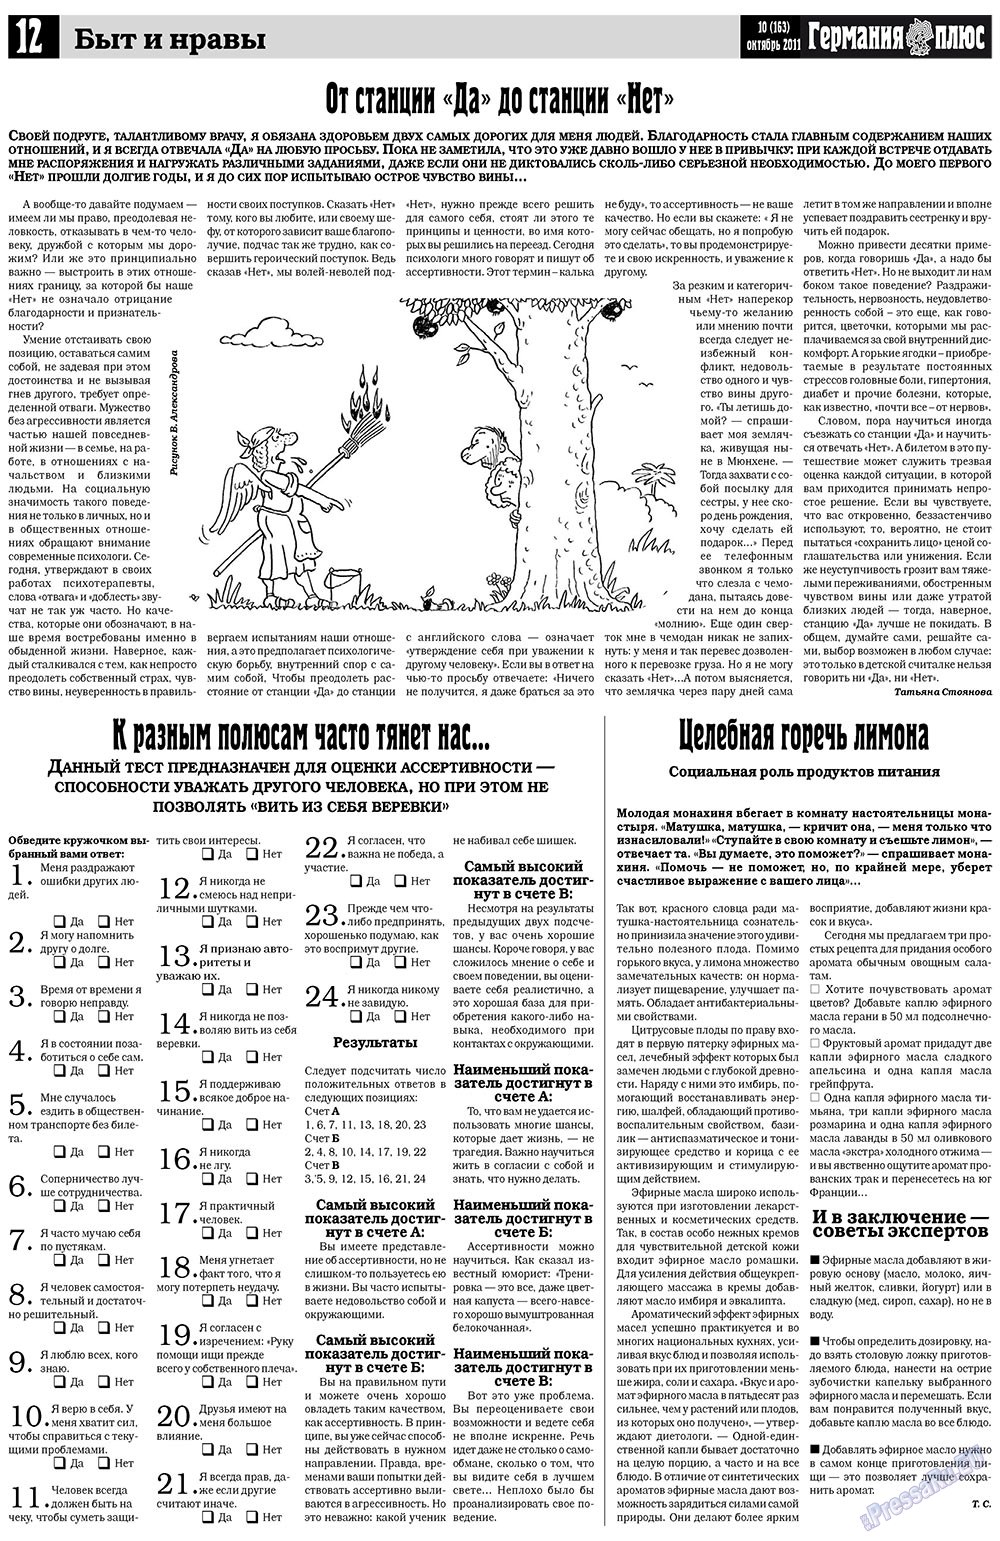 Германия плюс, газета. 2011 №10 стр.12